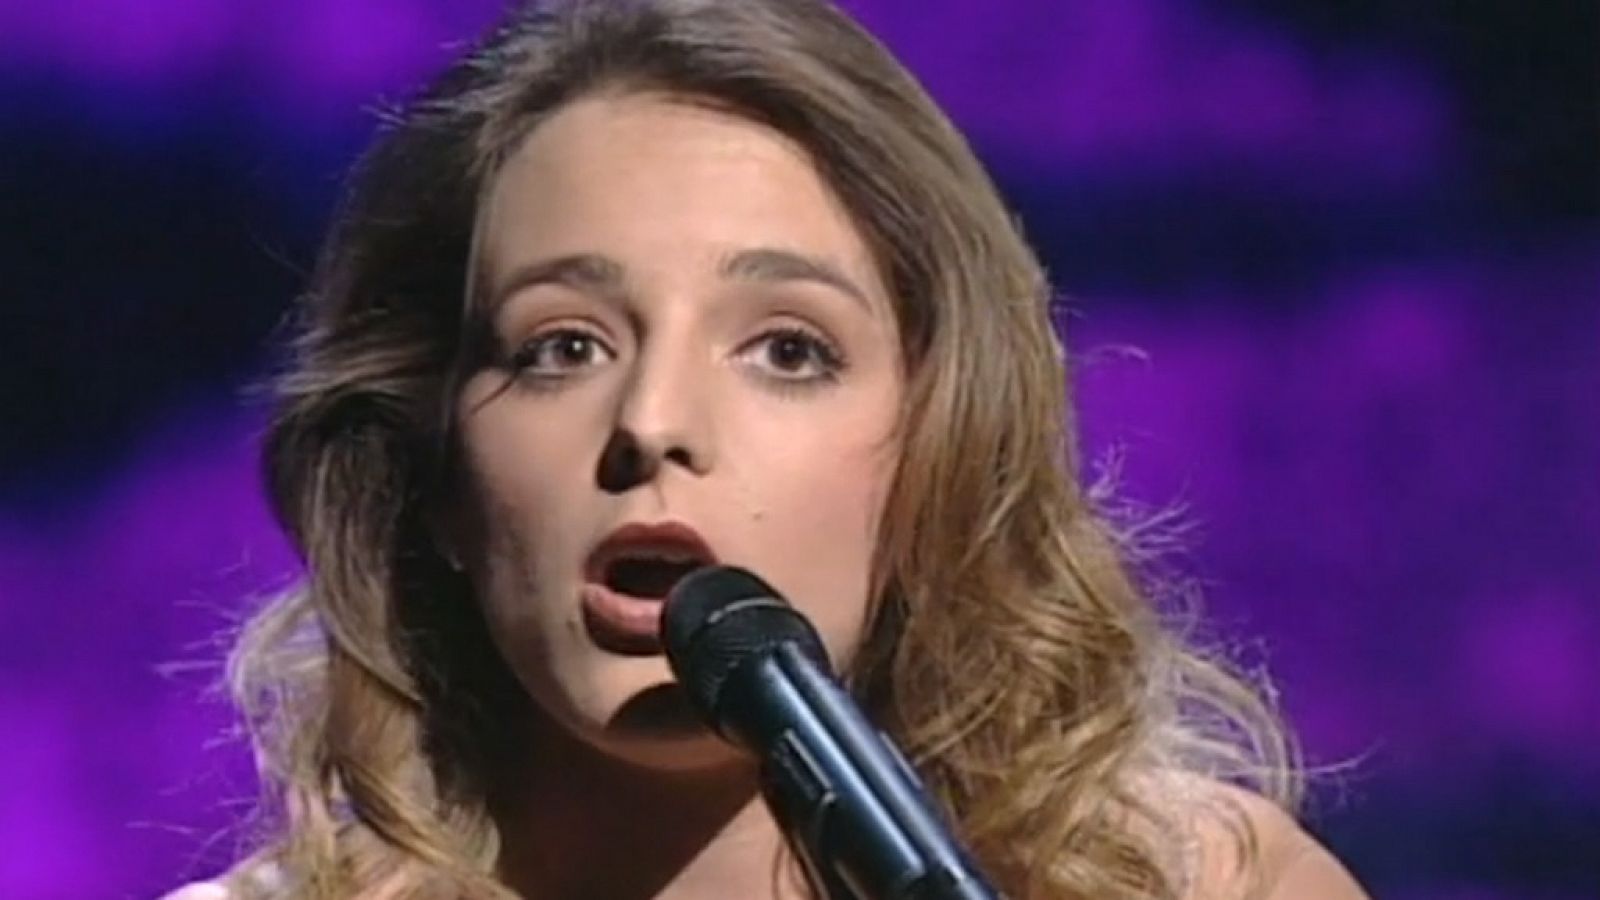 Festival de Eurovisión 1995 - Anabel Conde cantó "Vuelve conmigo"